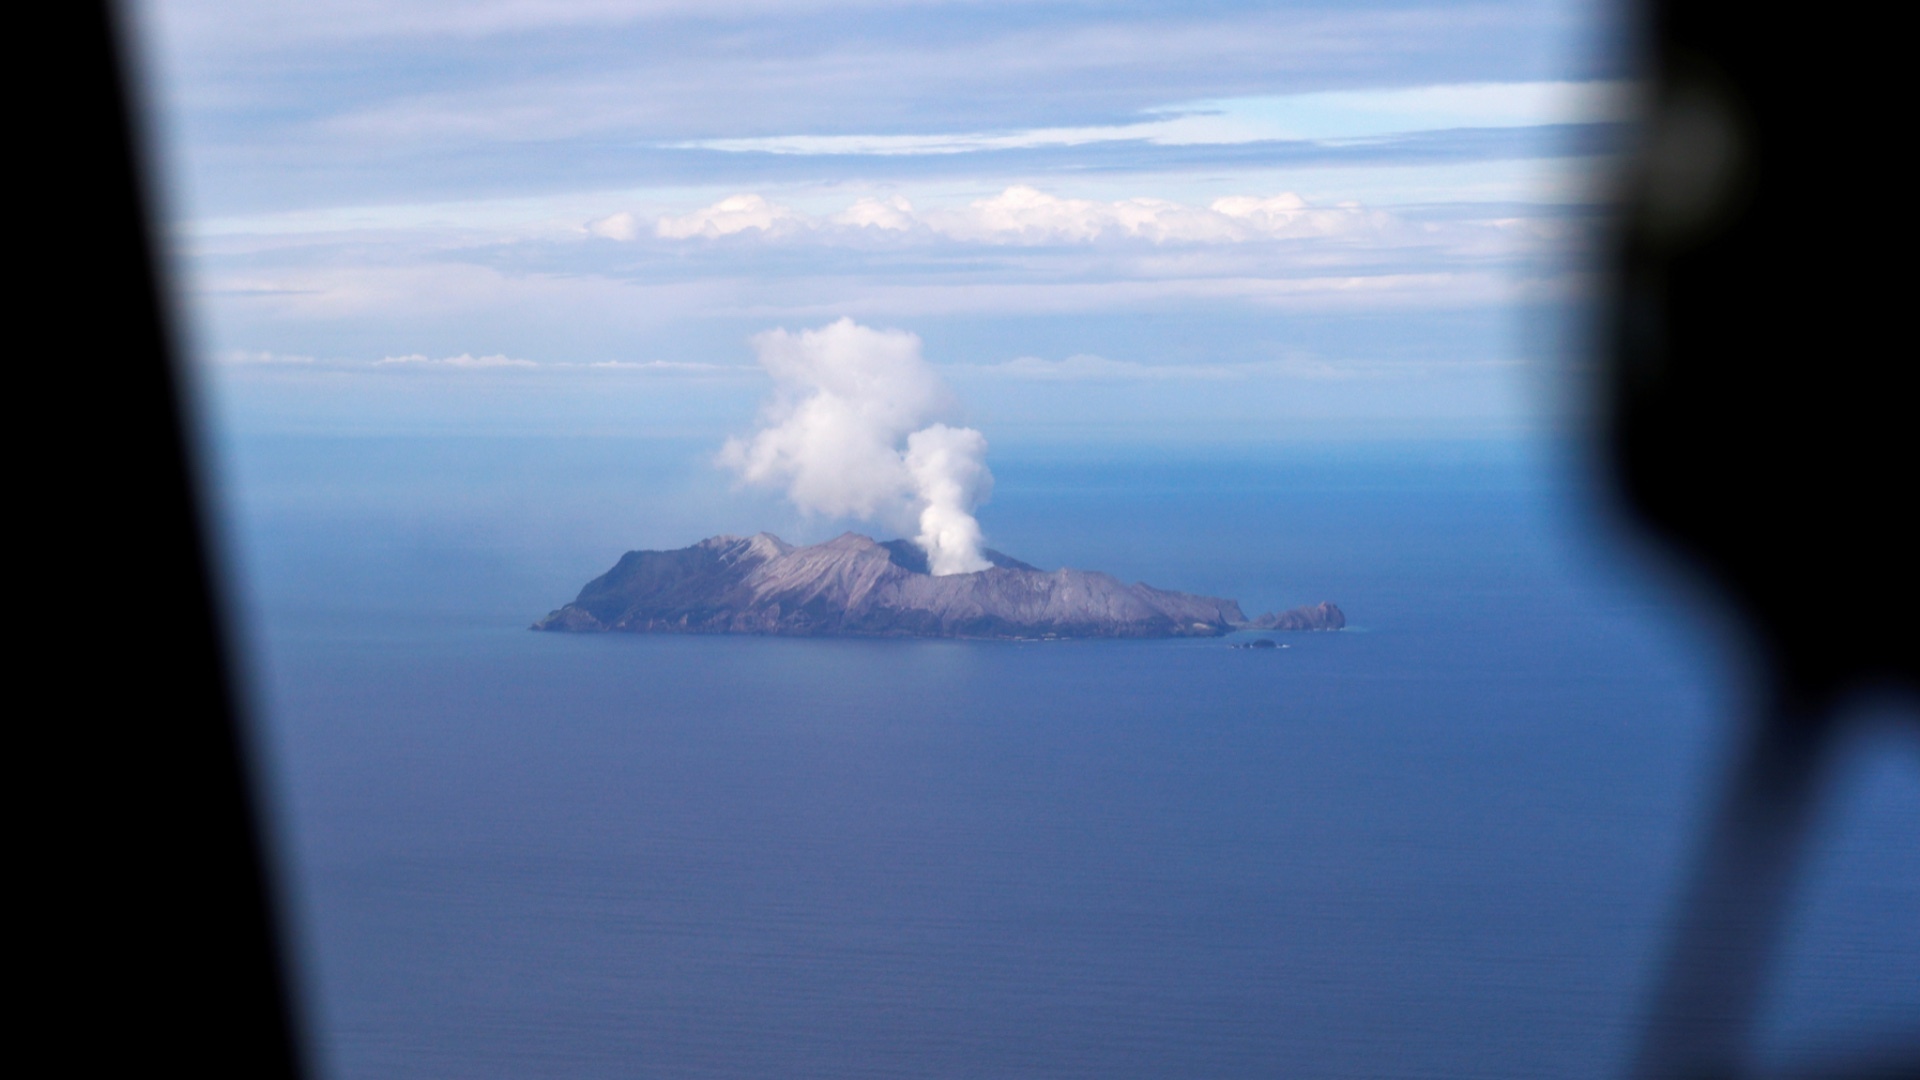 Selandia Baru memulai uji coba setelah bencana gunung berapi Pulau Putih 2019 |  Berita Gunung Berapi